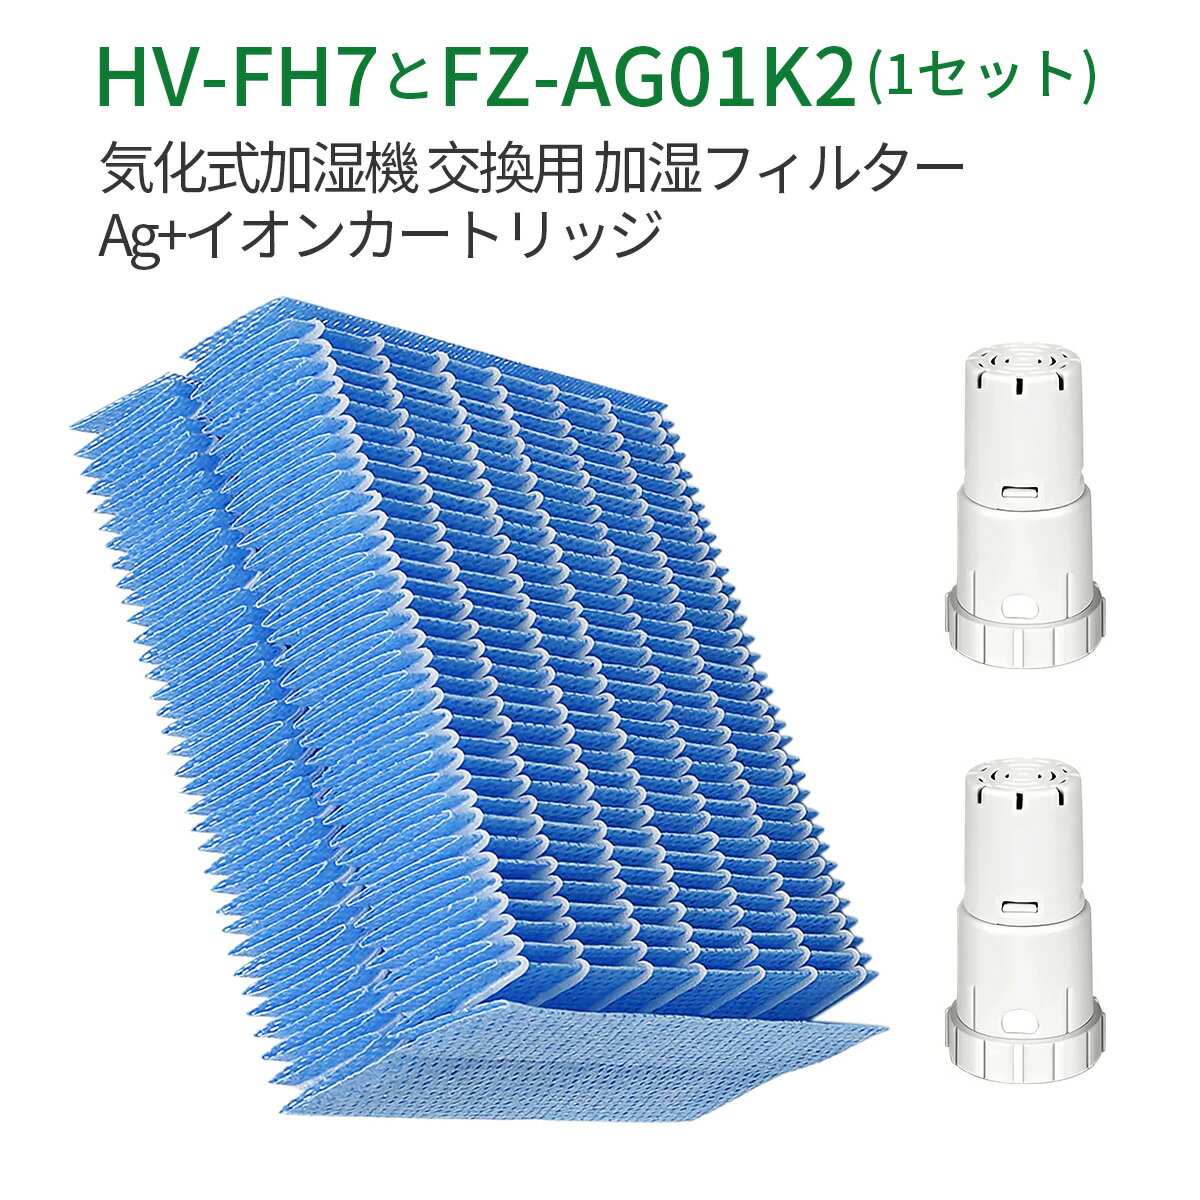 HV-FH7 FZ-AG01K2 加湿器 加湿フィルター hv-fh7 ag+イオンカートリッジ fz-ag01k1 気化式加湿機 HV-H55 HV-P75 HV-H75 HV-J55 HV-J75 HV-L75 HV-L55 HV-H55E6 交換用 (互換品/3枚セット)